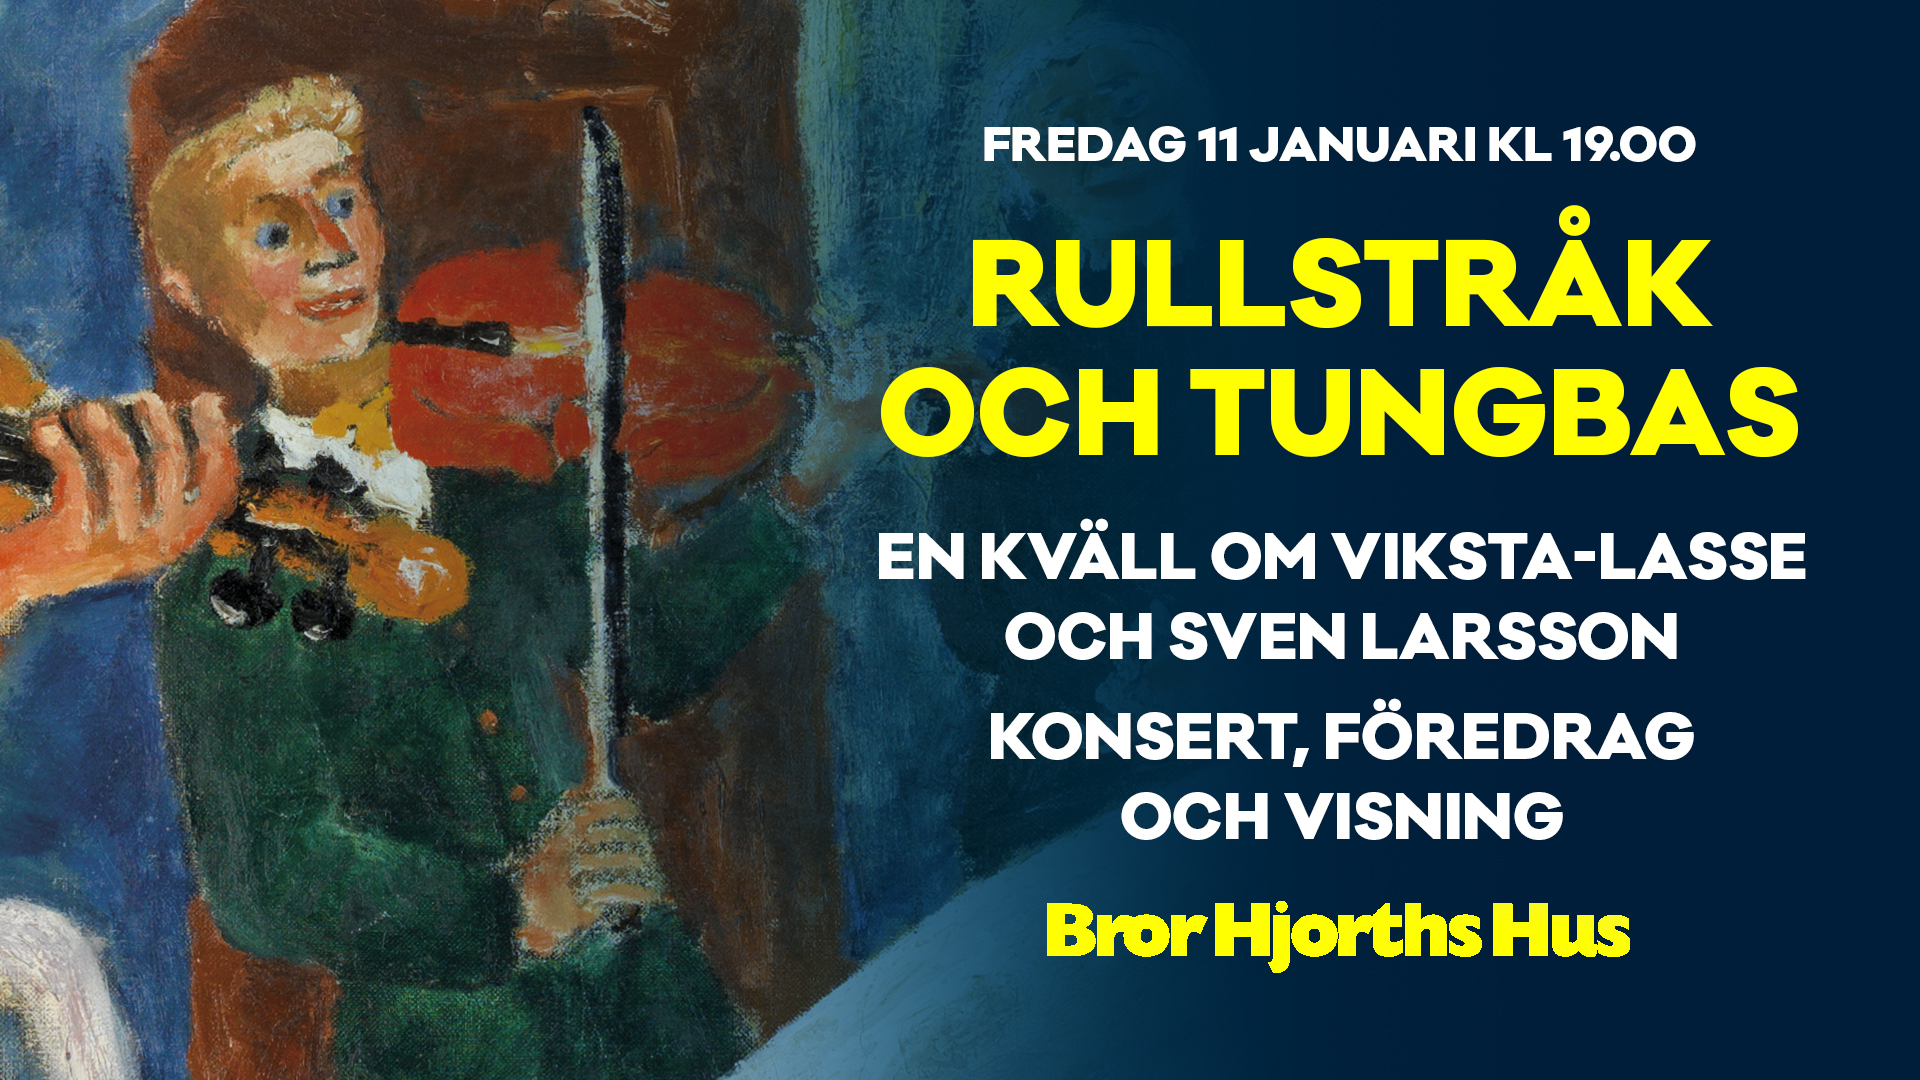 Bild på konstverk av Bror Hjorth med text om evenemanget